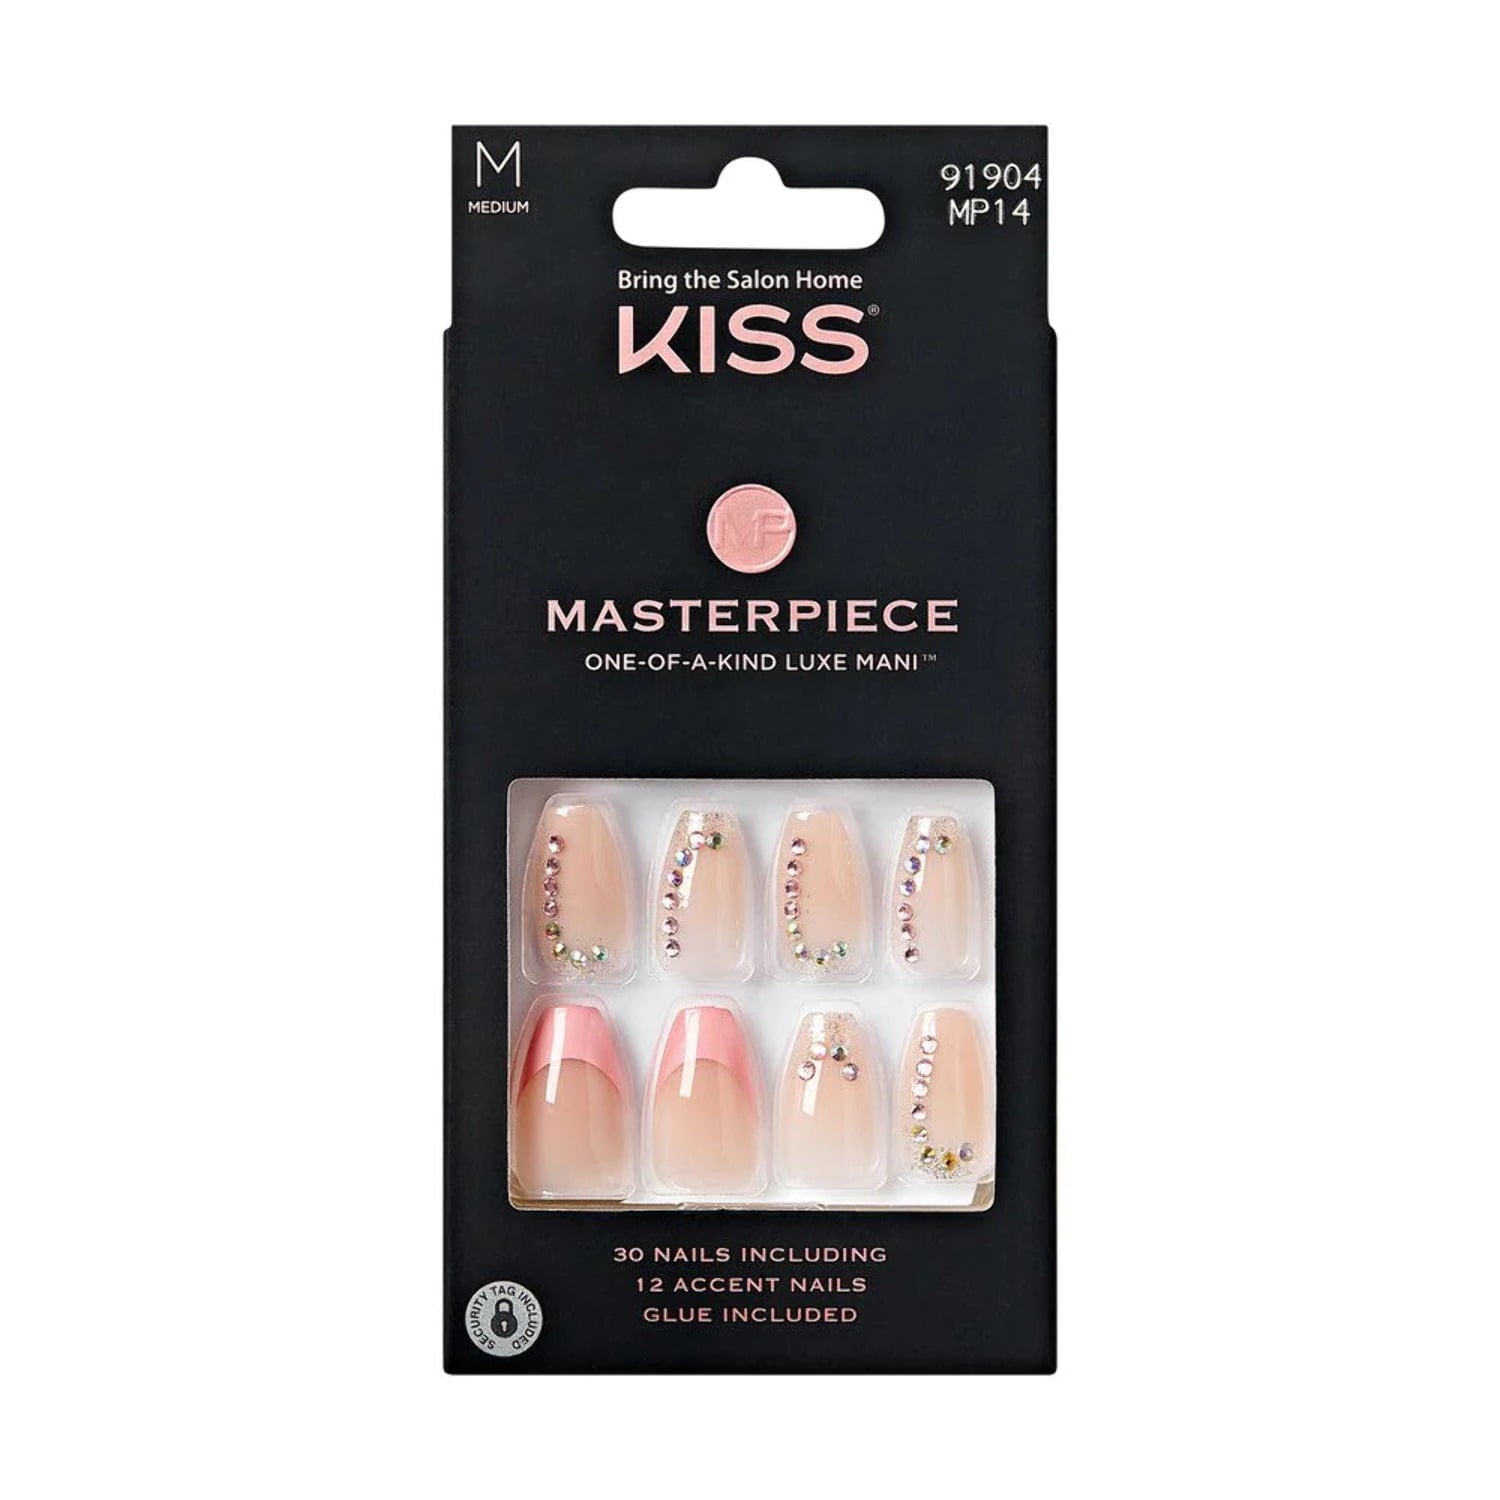 Kiss Masterpiece Nails - Stay Royal (MP14)